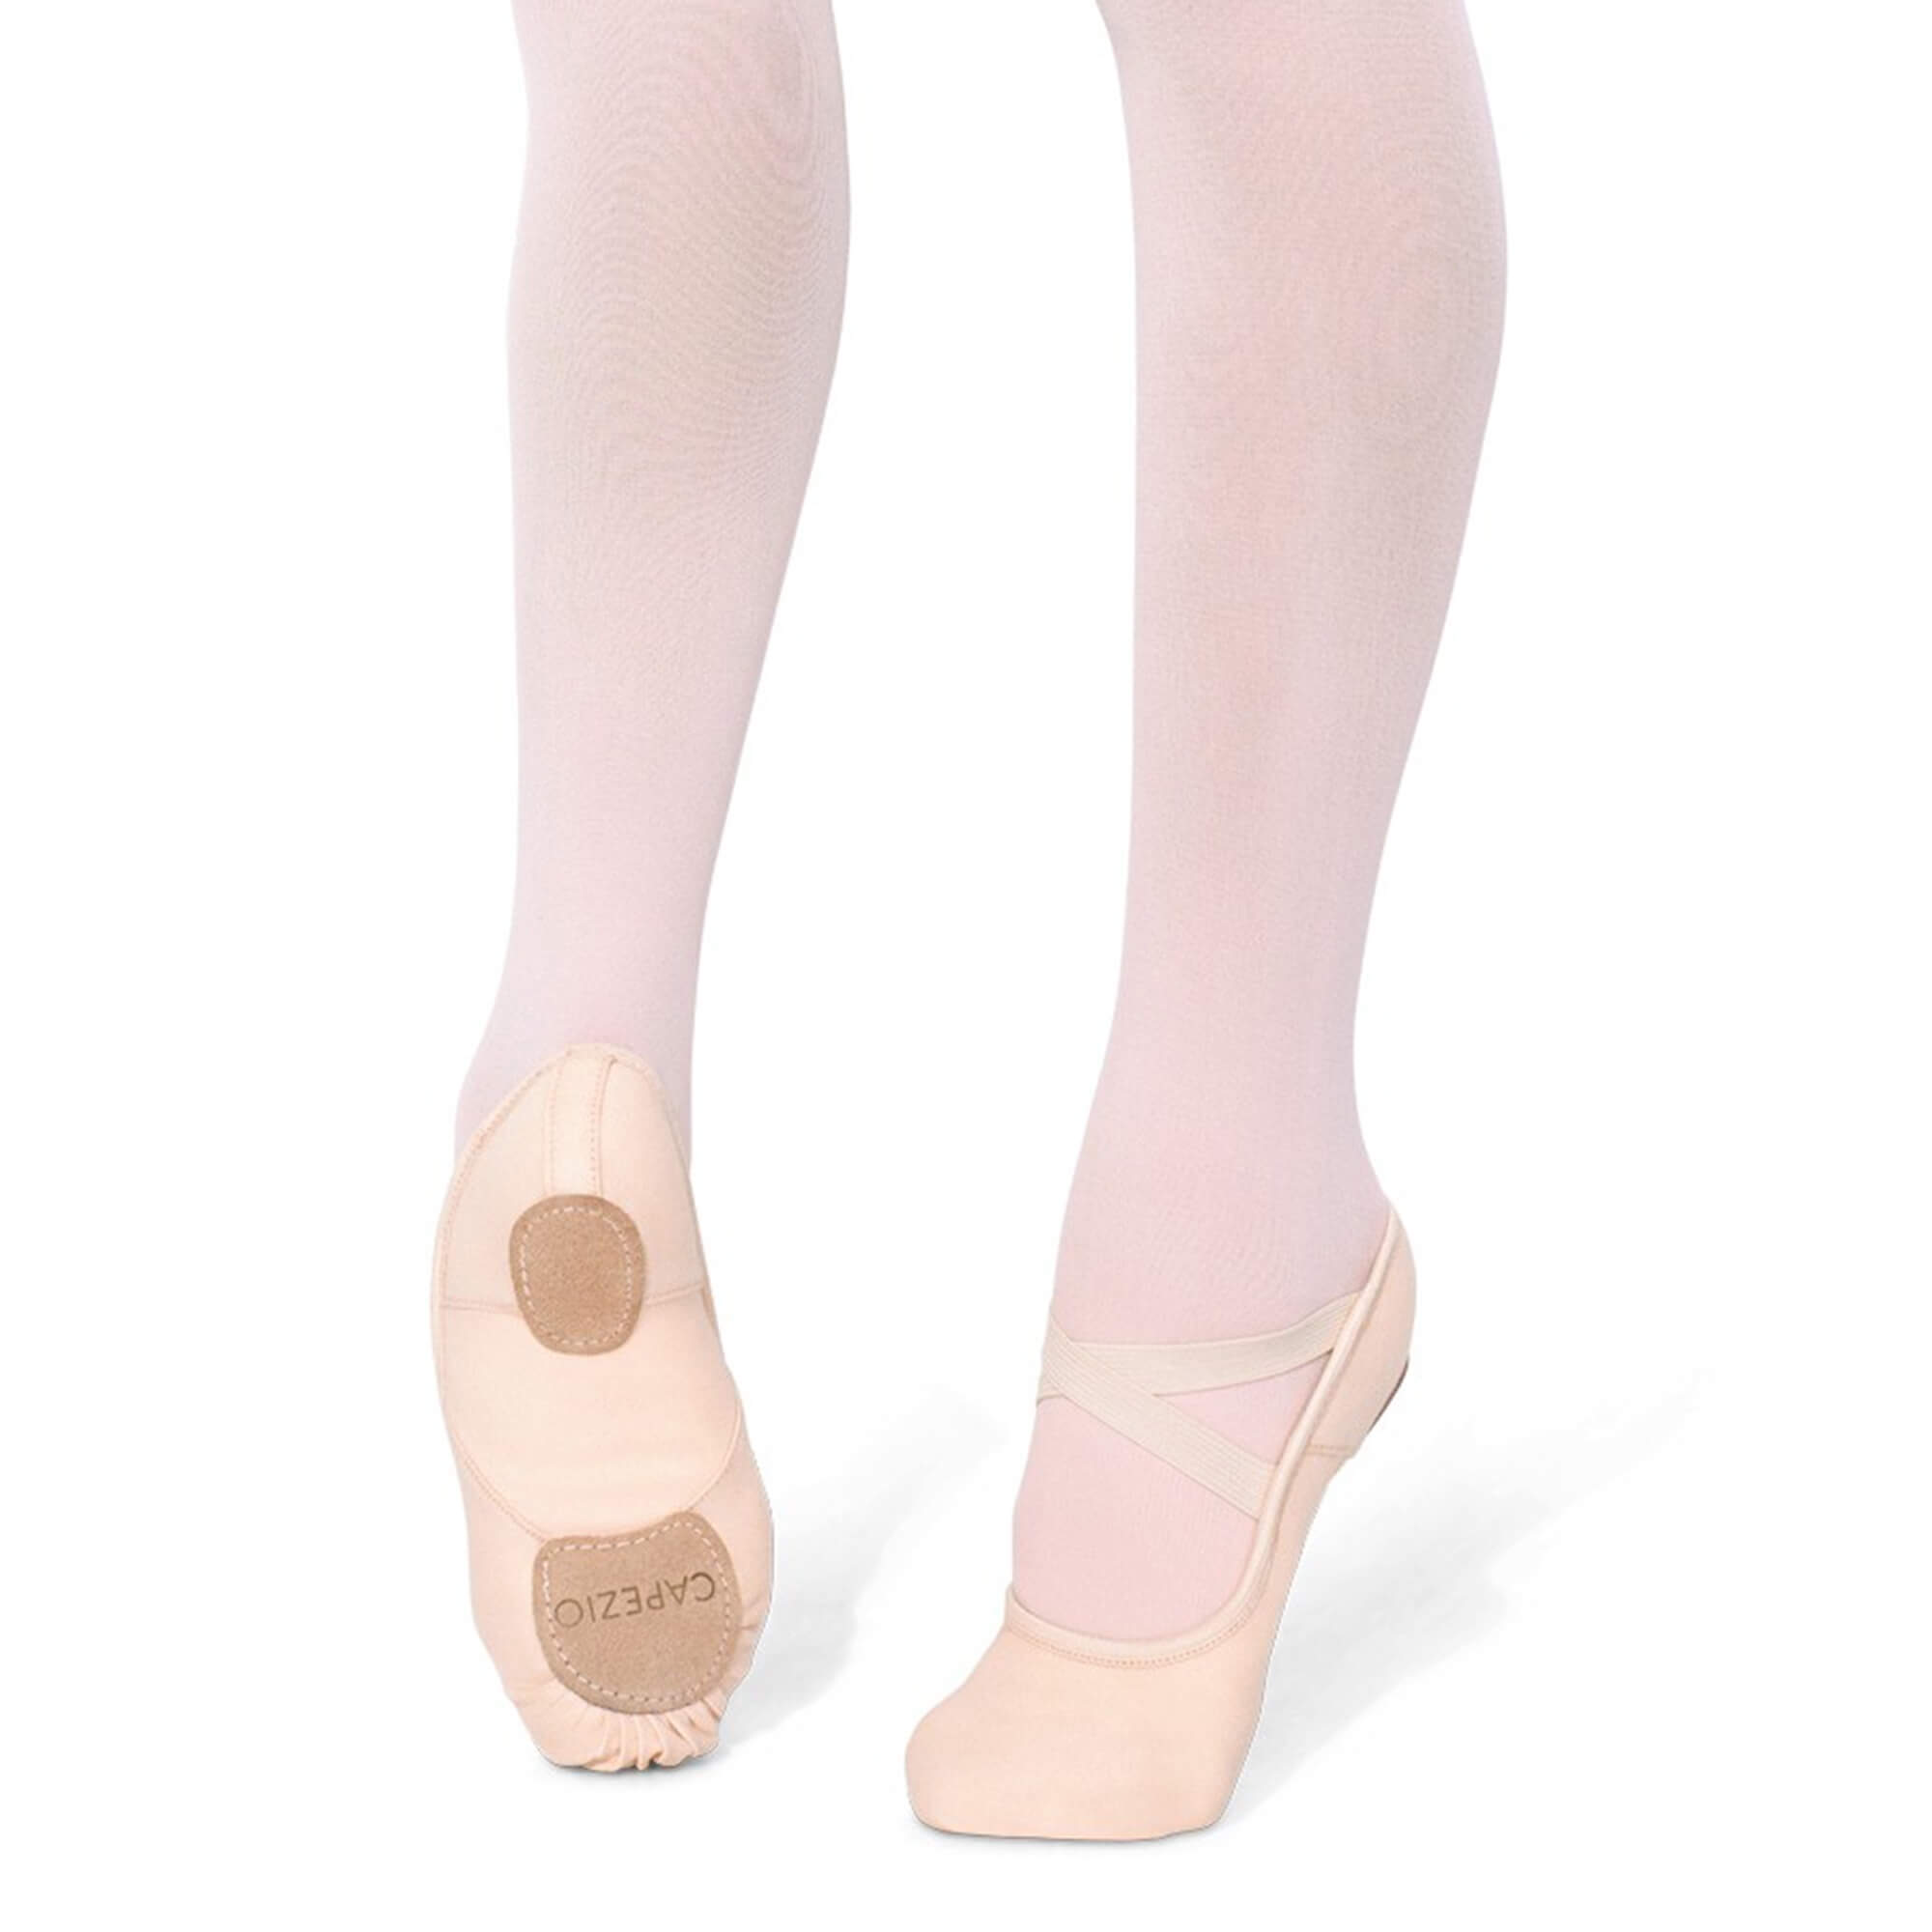  Capezio Hanami Ballet Shoe - Size 4.5M, Light Pink